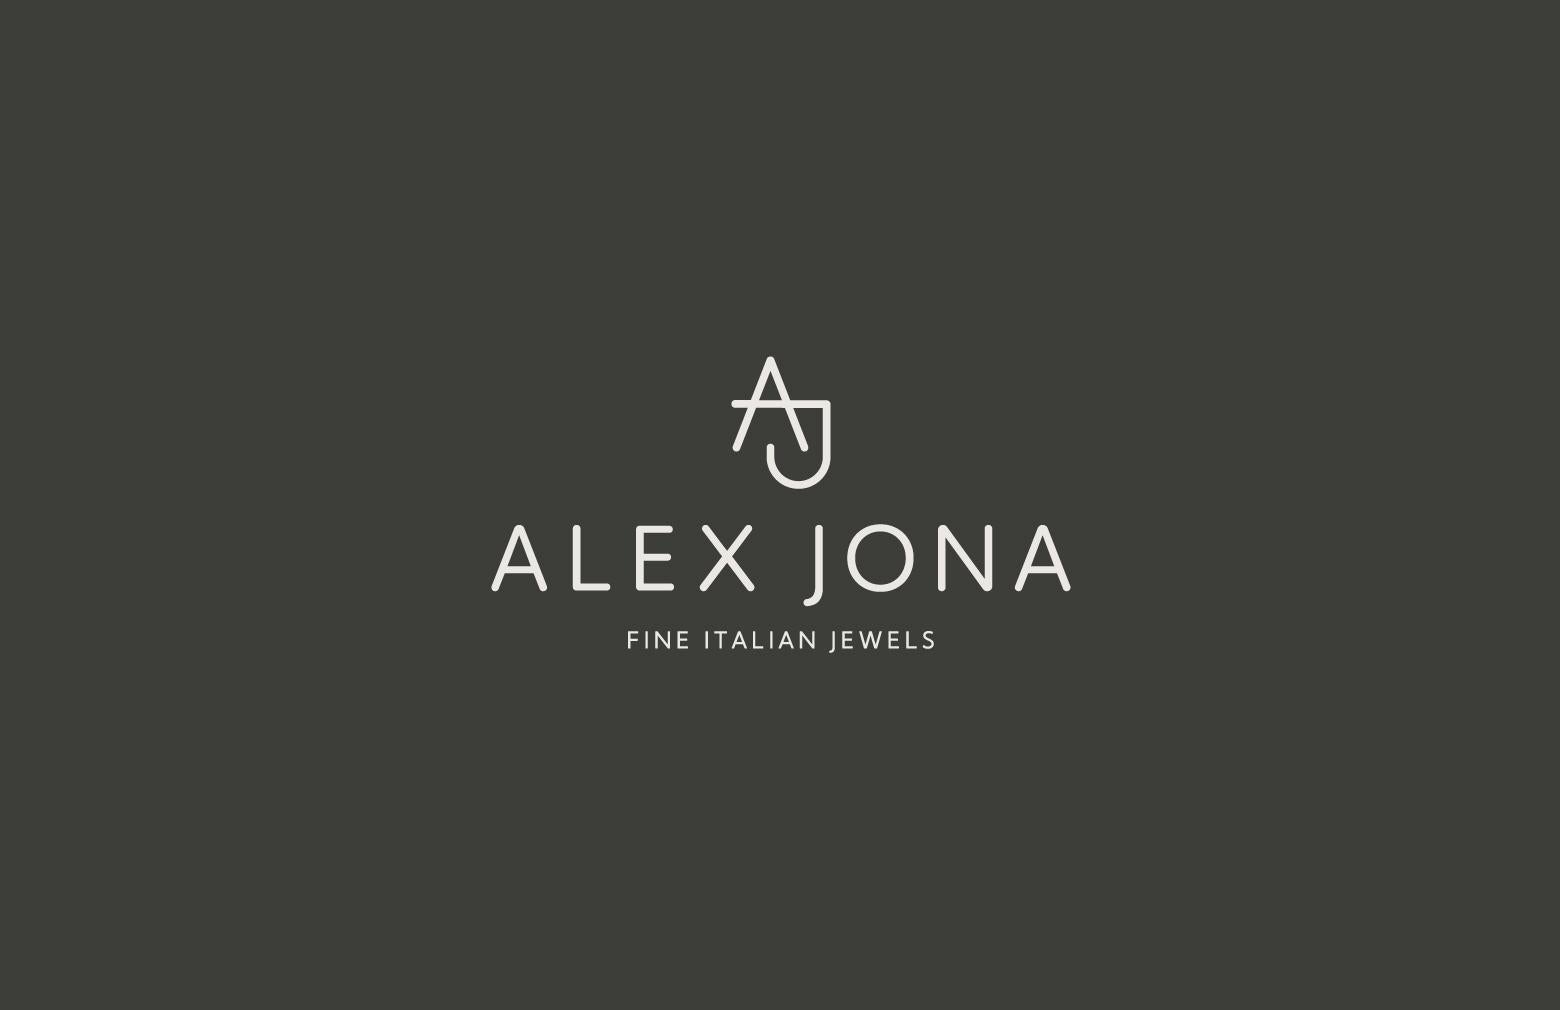 Alex Jona White Diamond Blue Enamel Sterling Silver Cufflinks For Sale 5